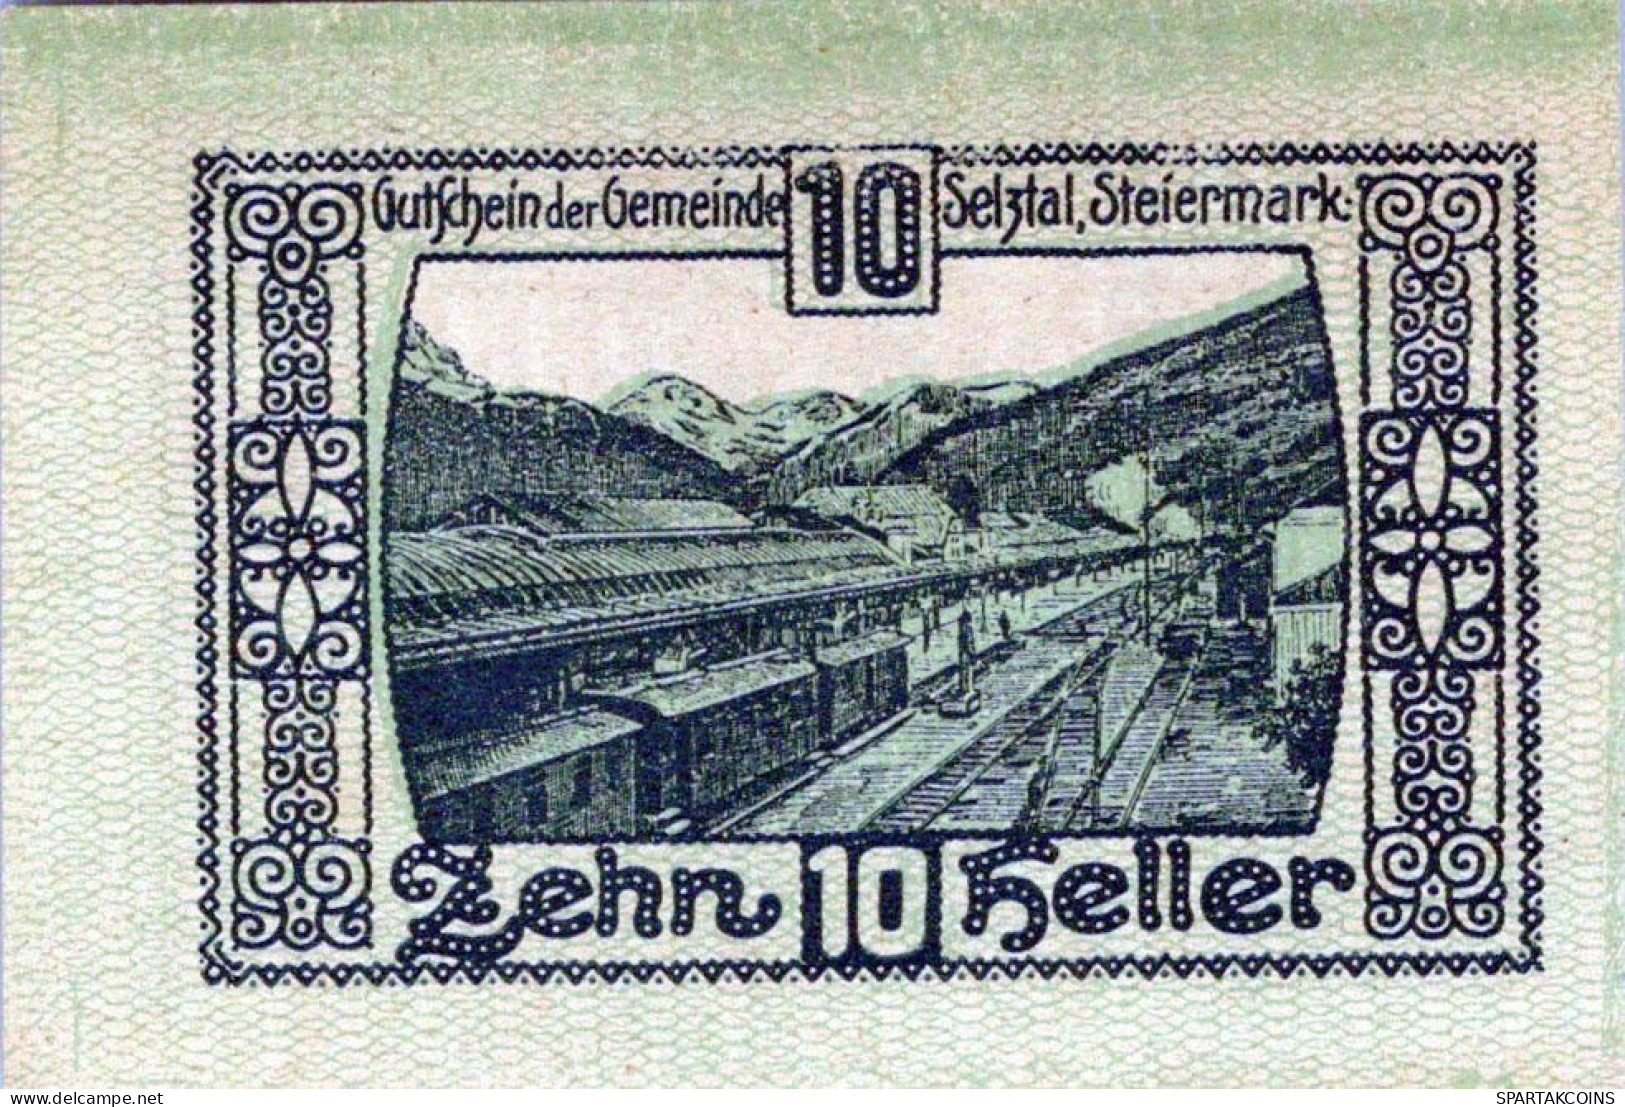 10 HELLER 1918-1921 Stadt SELZTAL Styria Österreich Notgeld Banknote #PE678 - [11] Local Banknote Issues